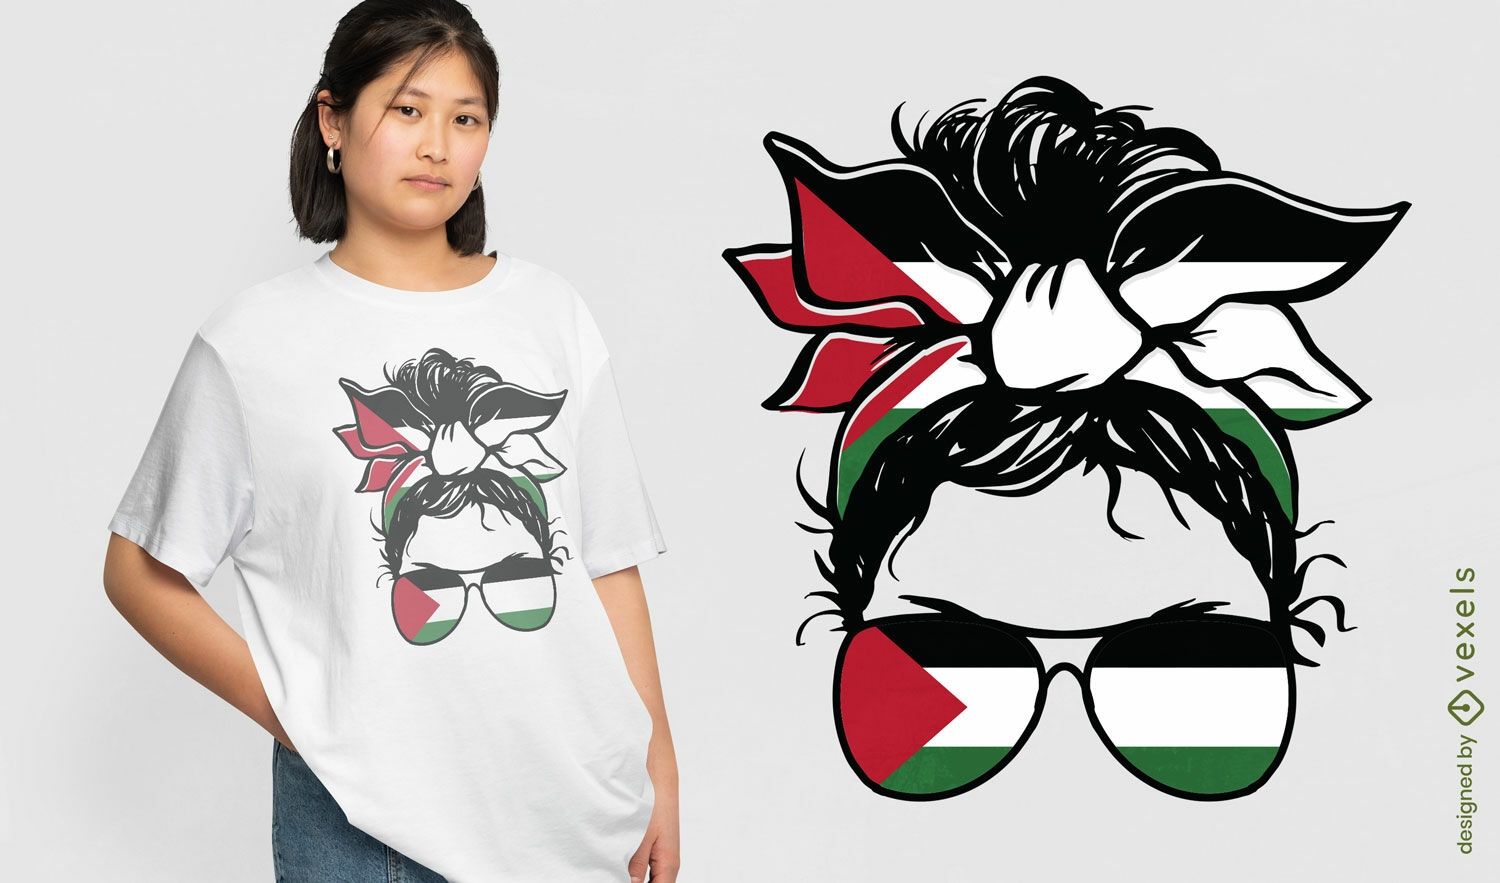 Dise?o de camiseta de accesorios de bandera palestina.